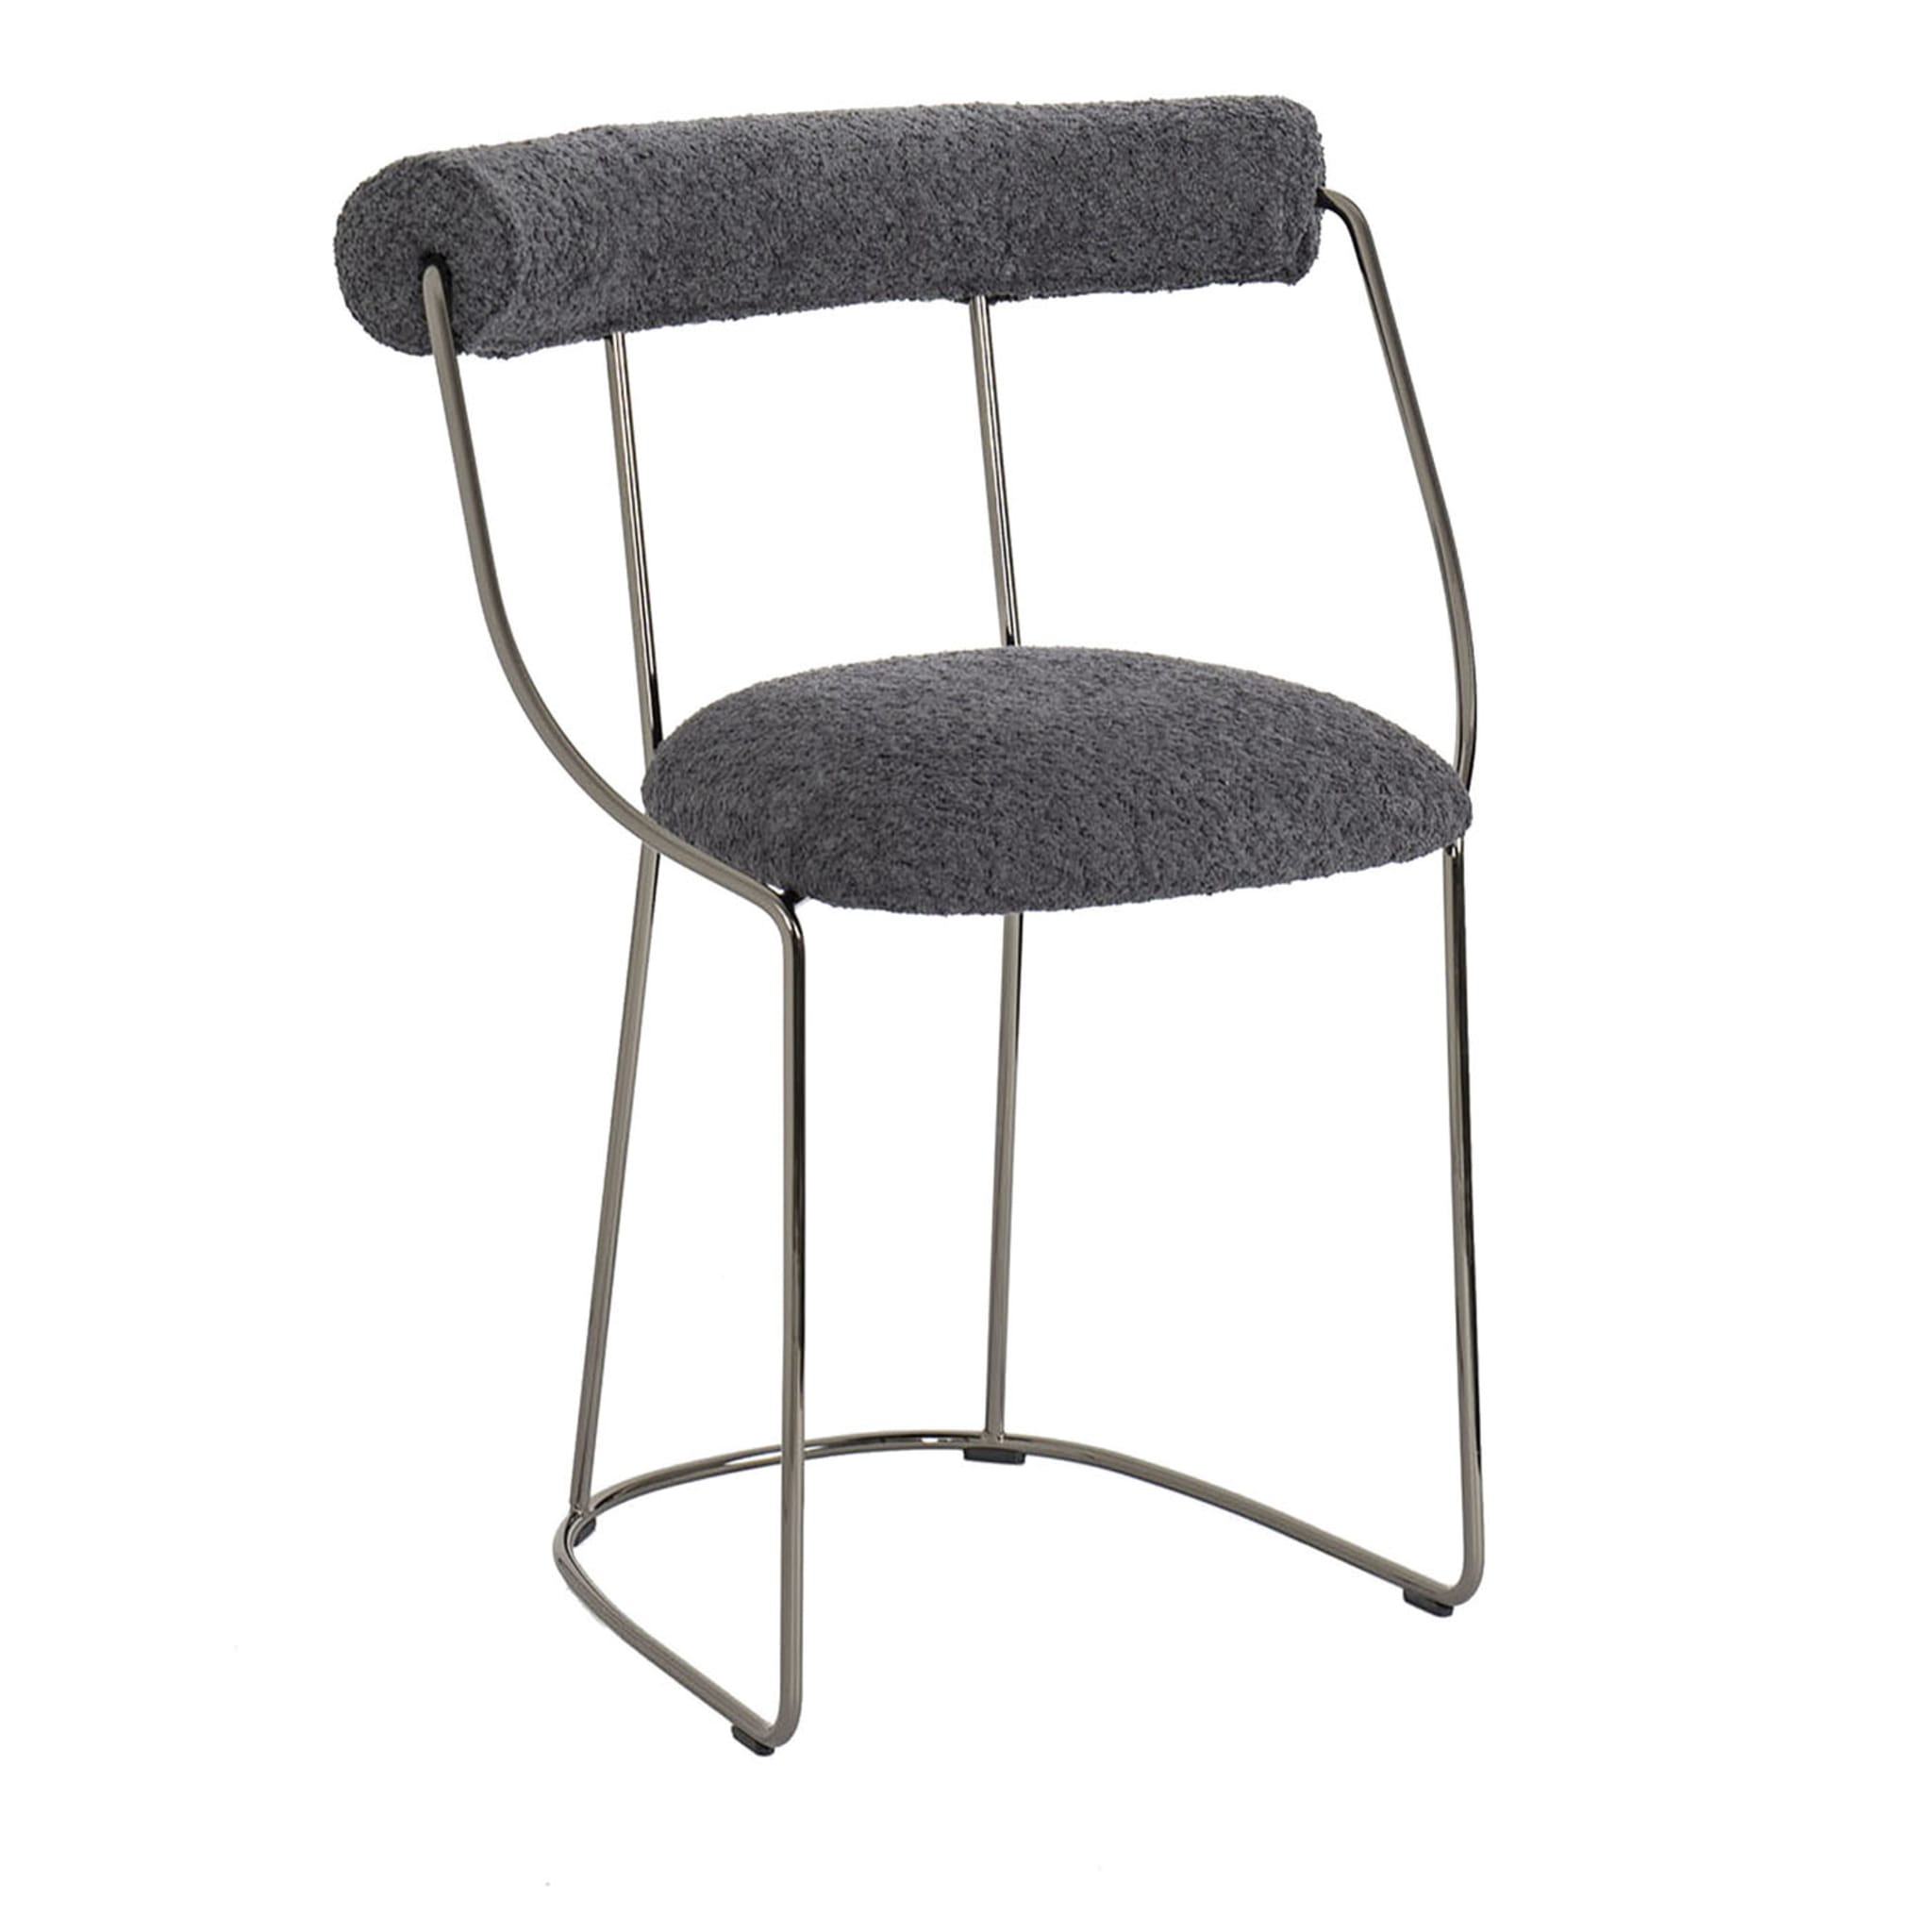 Fran Ultrablack Chair - Main view